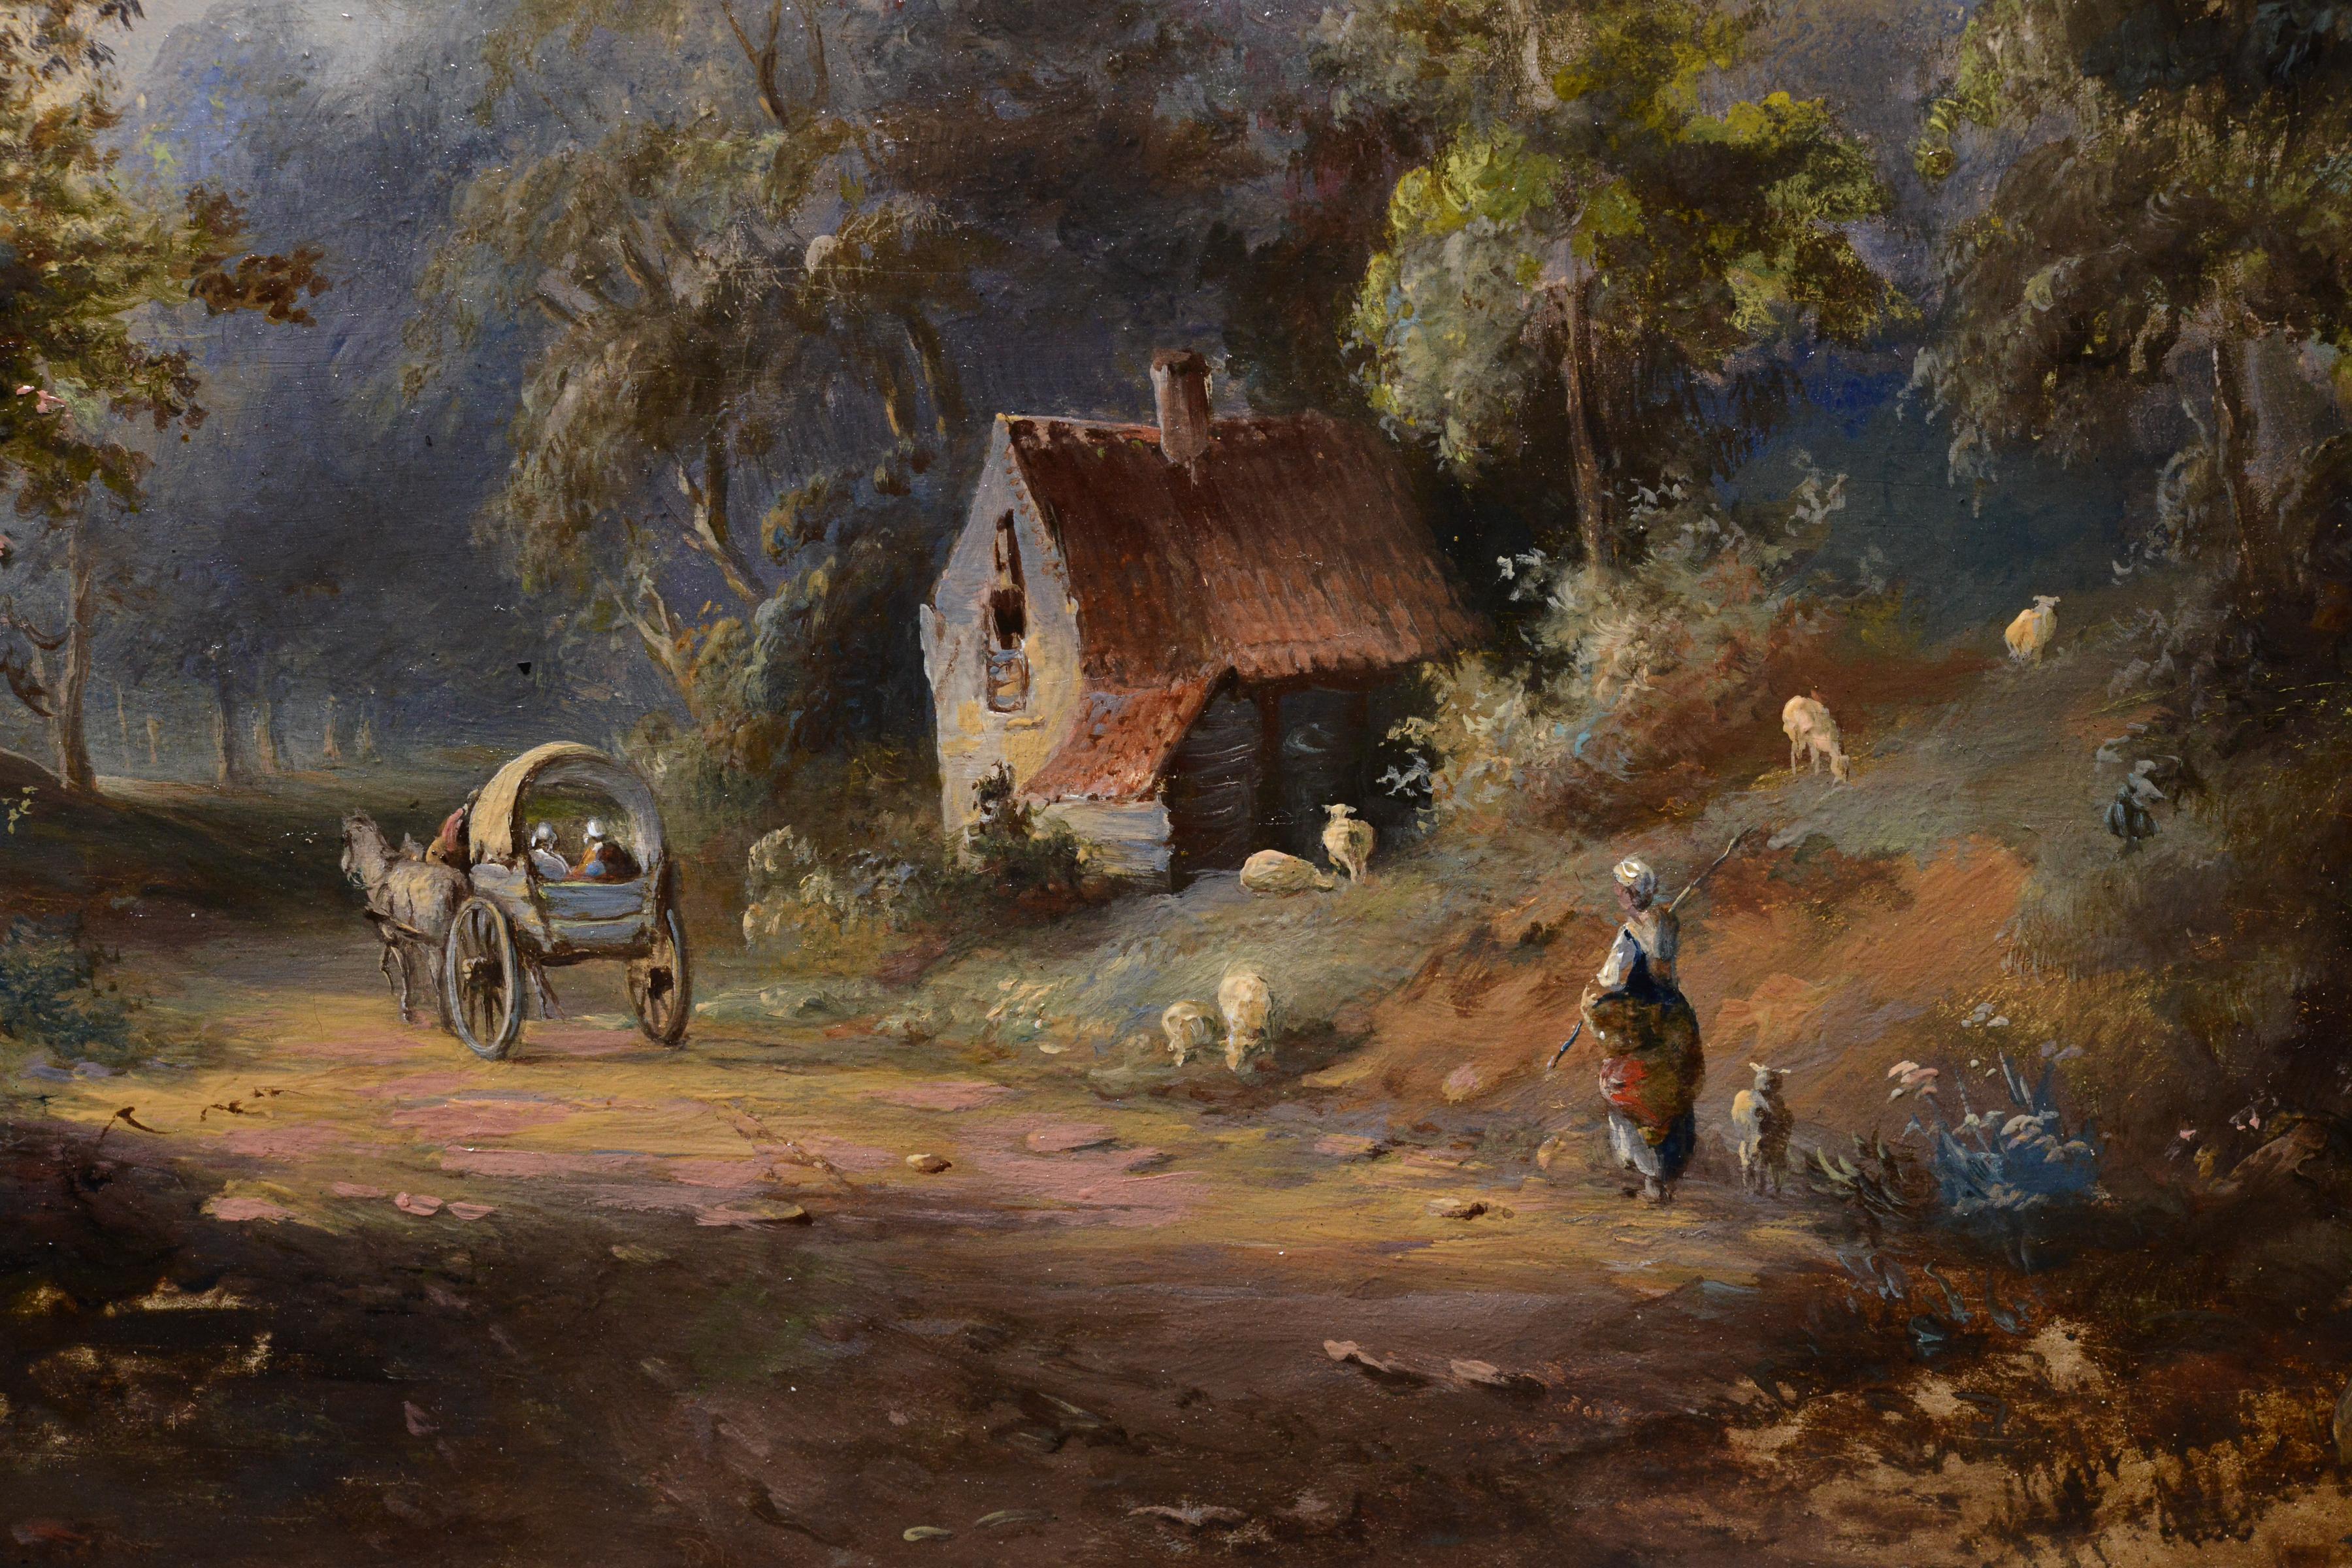 Paysage pastoral de campagne Voyageurs sur une route forestière Peinture à l'huile du 19e siècle - Réalisme Painting par Pavel Pavlovich Dzhogin